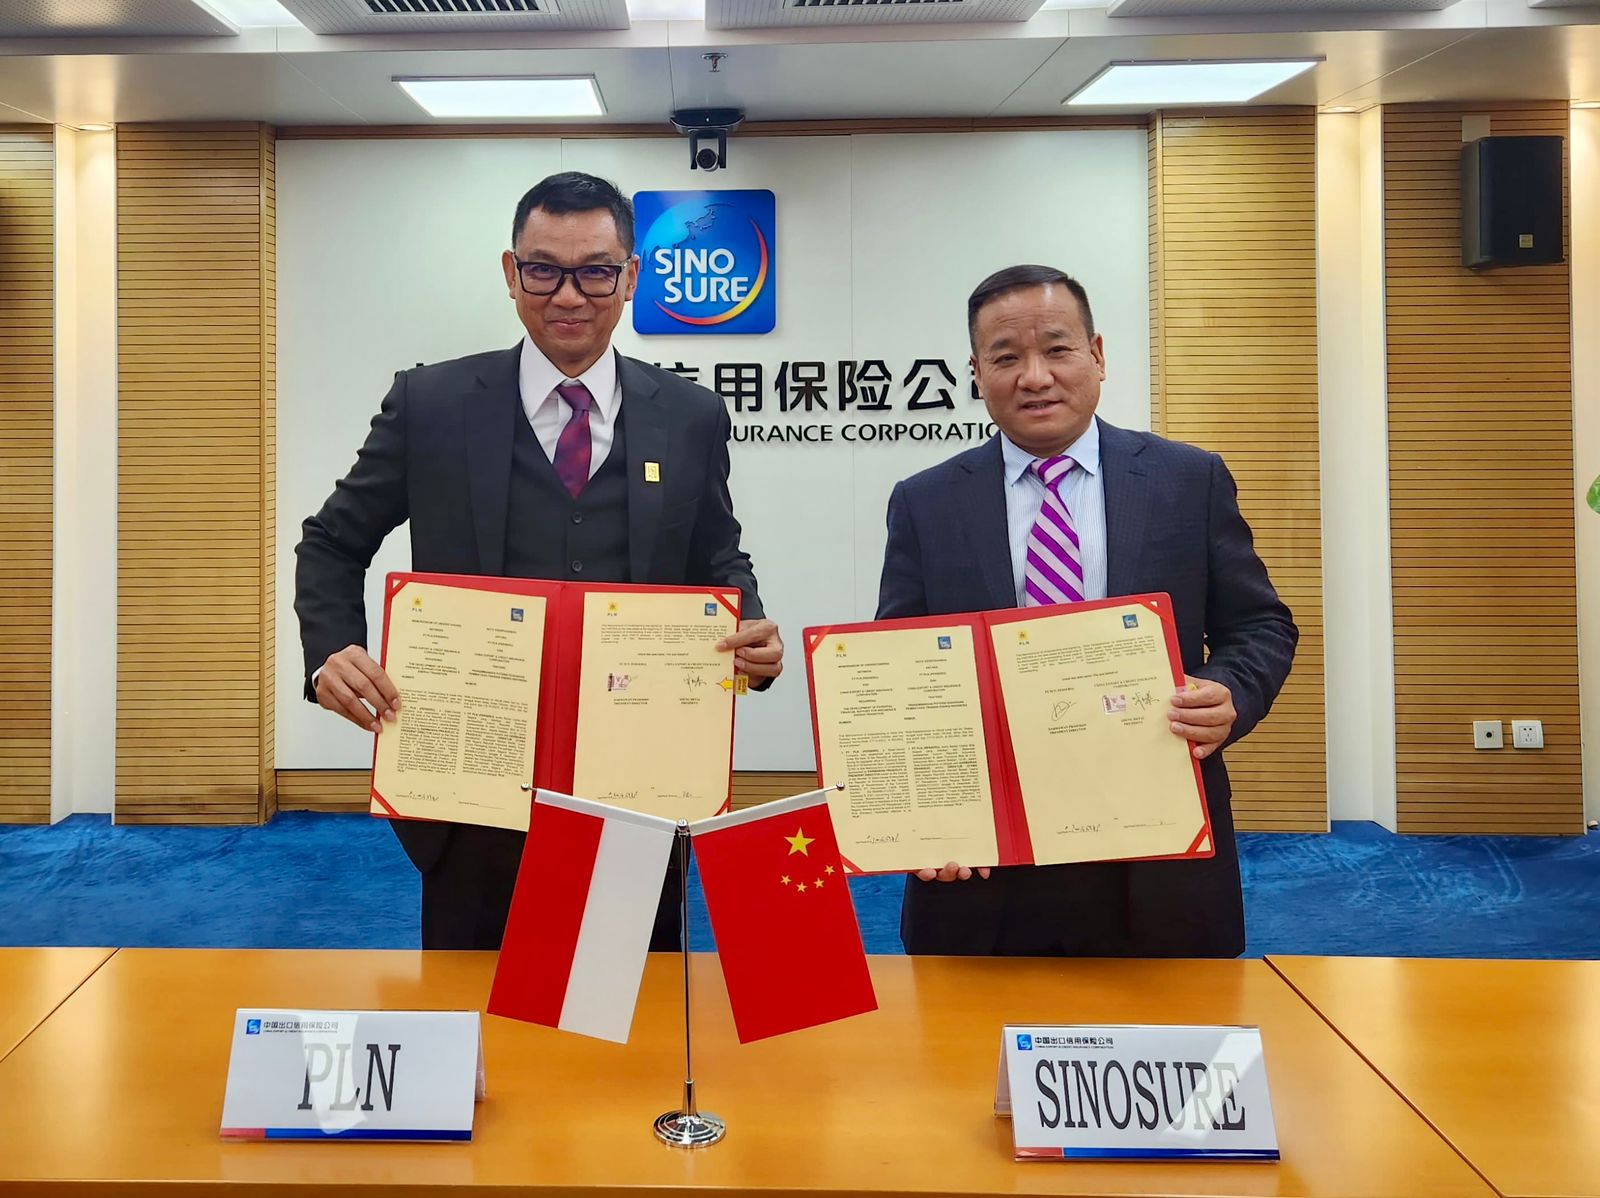 Dengan ditandatanganinya MoU ini, PLN mendapatkan dukungan akses pendanaan hijau dari Sinosure untuk program transisi energi. Kiri ke kanan: Darmawan Prasodjo (Direktur Utama PLN) dan Sheng Hetai (Vice Chairman, President Sinosure).